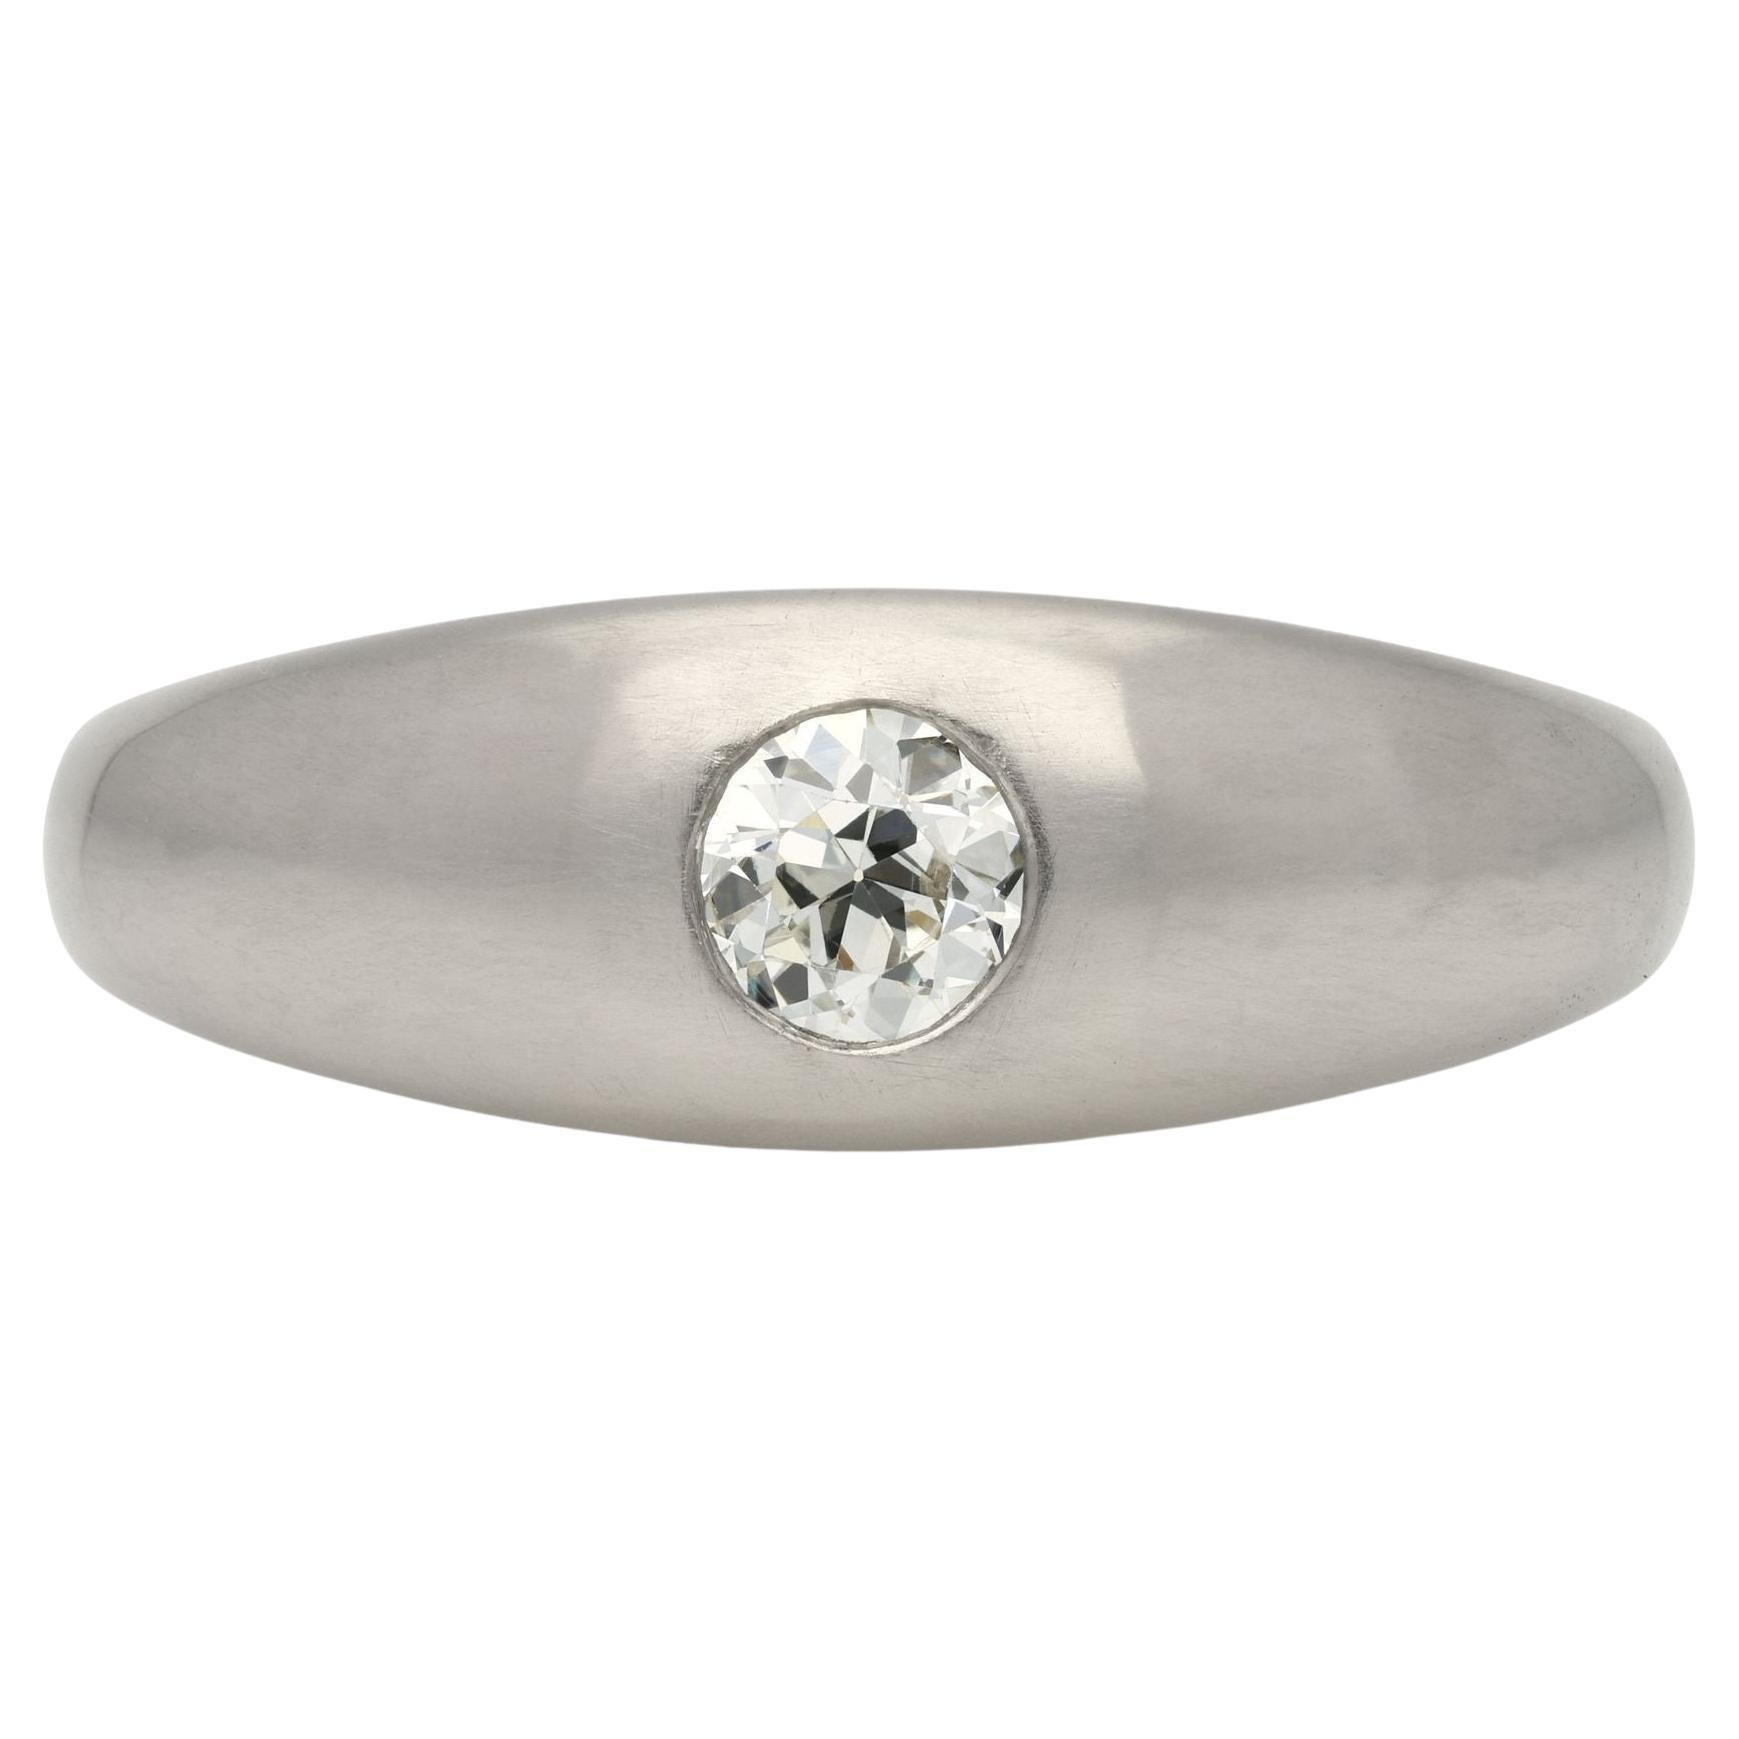 Hancocks Contemporary 0.45ct Old European Cut Diamond Band Ring in Platinum (bague en platine avec diamant de taille européenne ancienne)